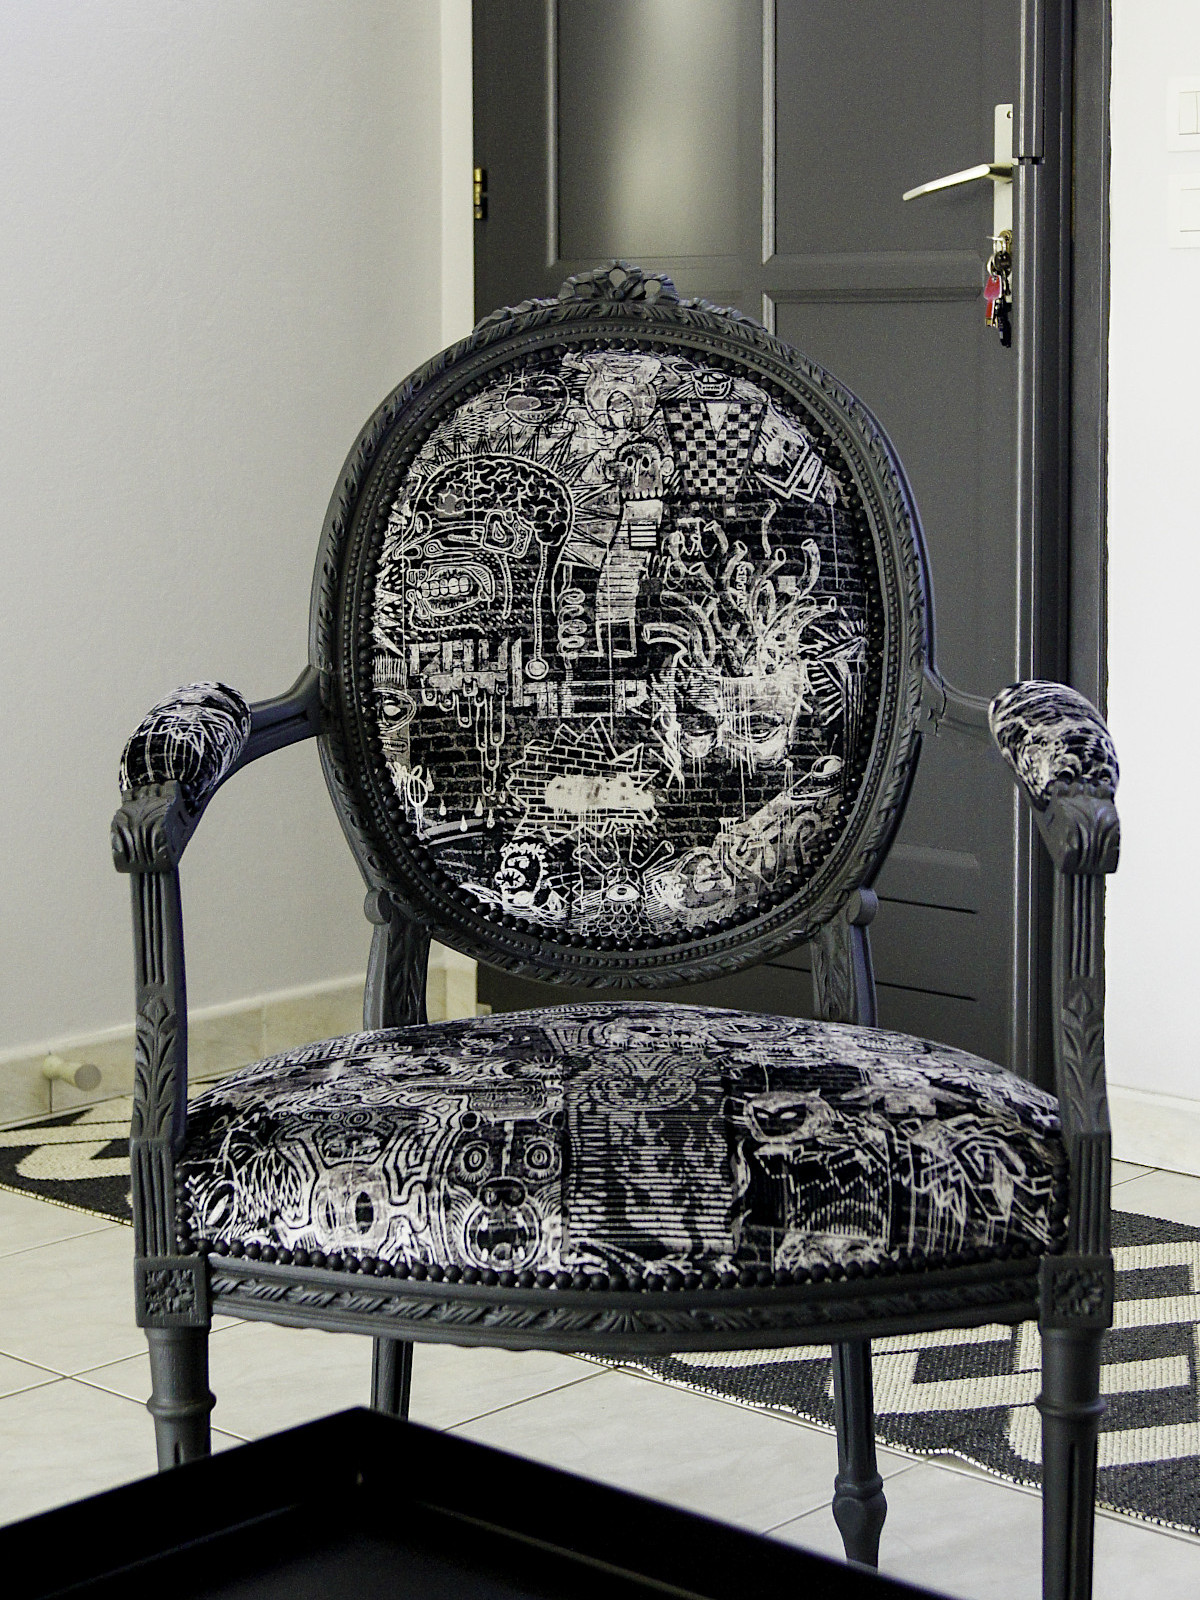 Décapage et relooking de fauteuils Louis XVI, finition couleur réglisse. Tissus noir et beige. Slide Avant / après travail.